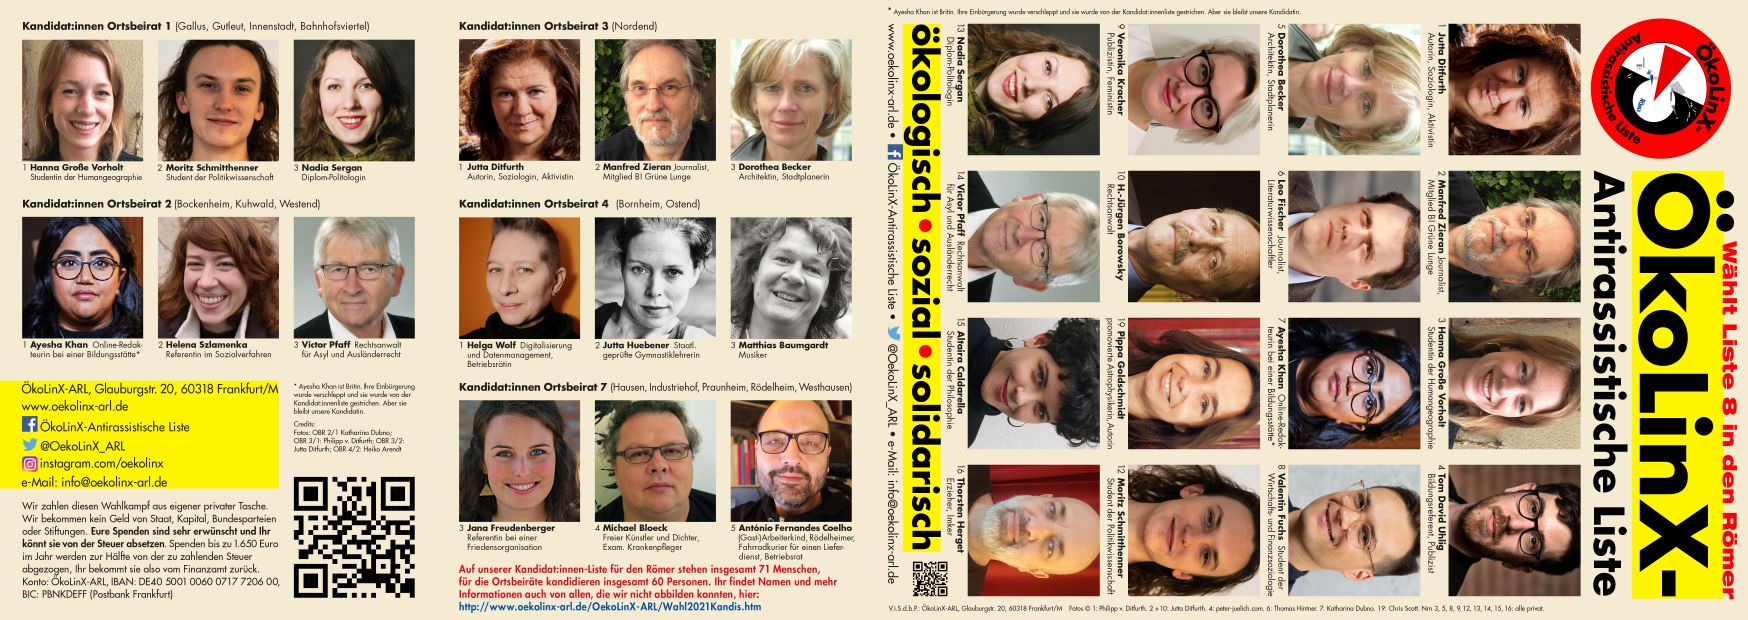 Flyer mit Manifest, Bilder der ersten Kandidat:innen für die Ortsbeiräte und die Stadtliste zur Kommunalwahl in Frankfurt am Main am 14.3.2021